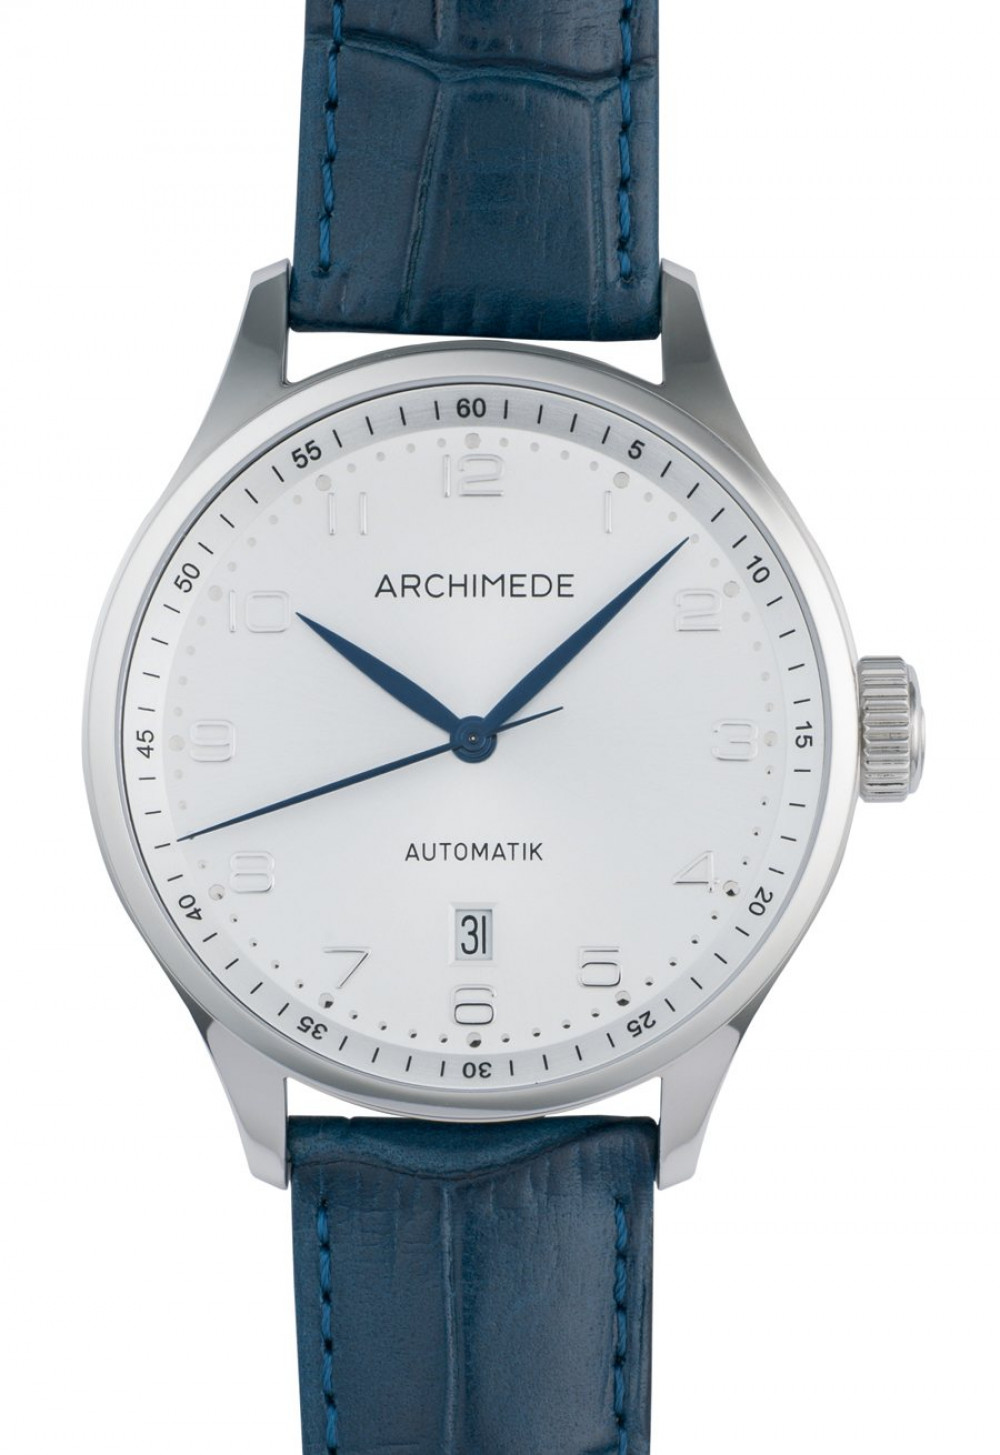 Zegarek firmy Archimede, model Klassik 42